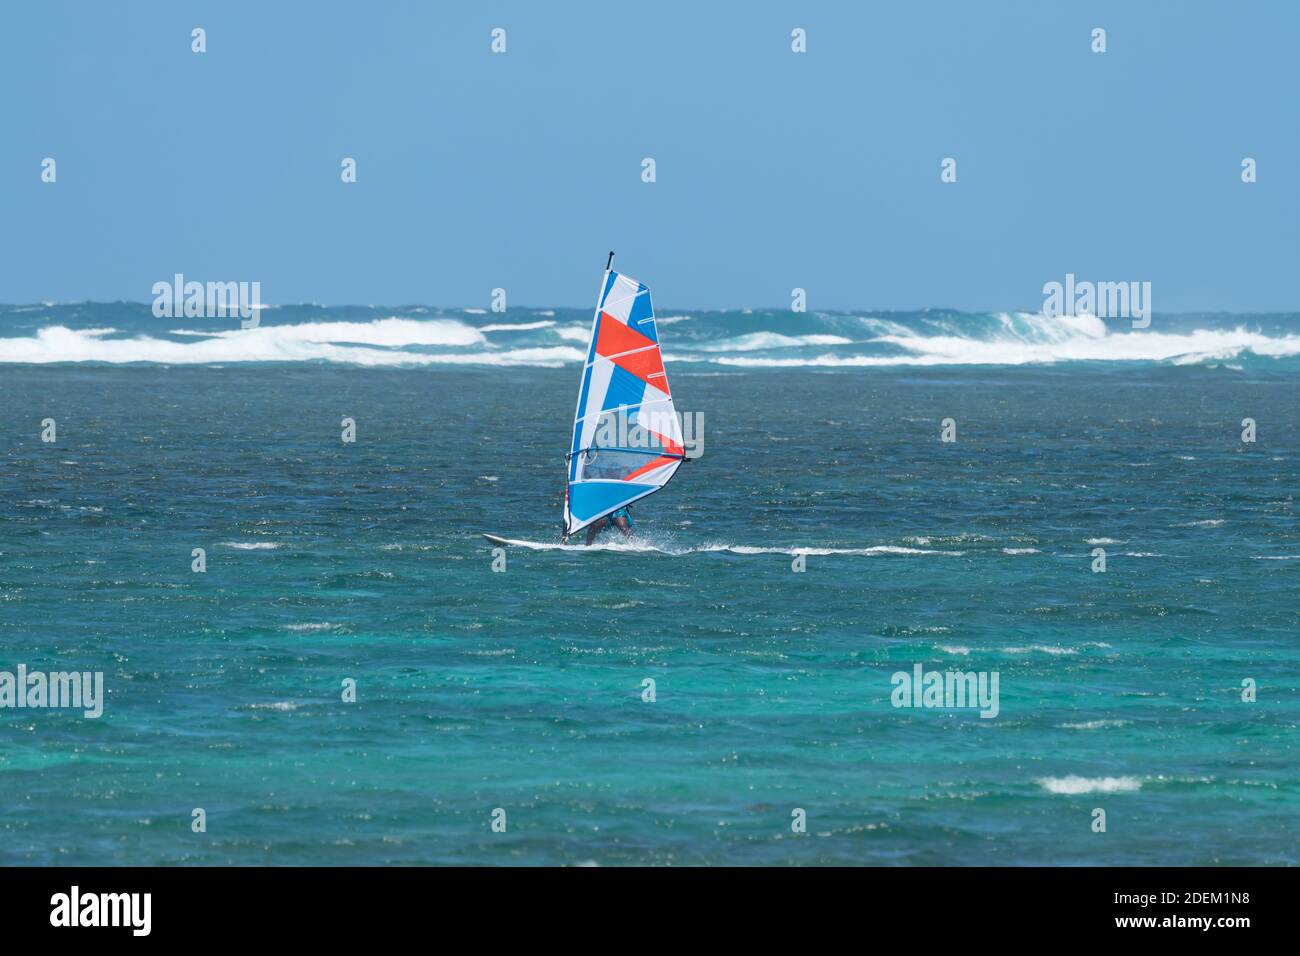 Windsurfer rasen auf dem türkisblauen Ozean Riff am Tropische Insel Mauritius Konzept Lifestyle und Wassersport Stockfoto